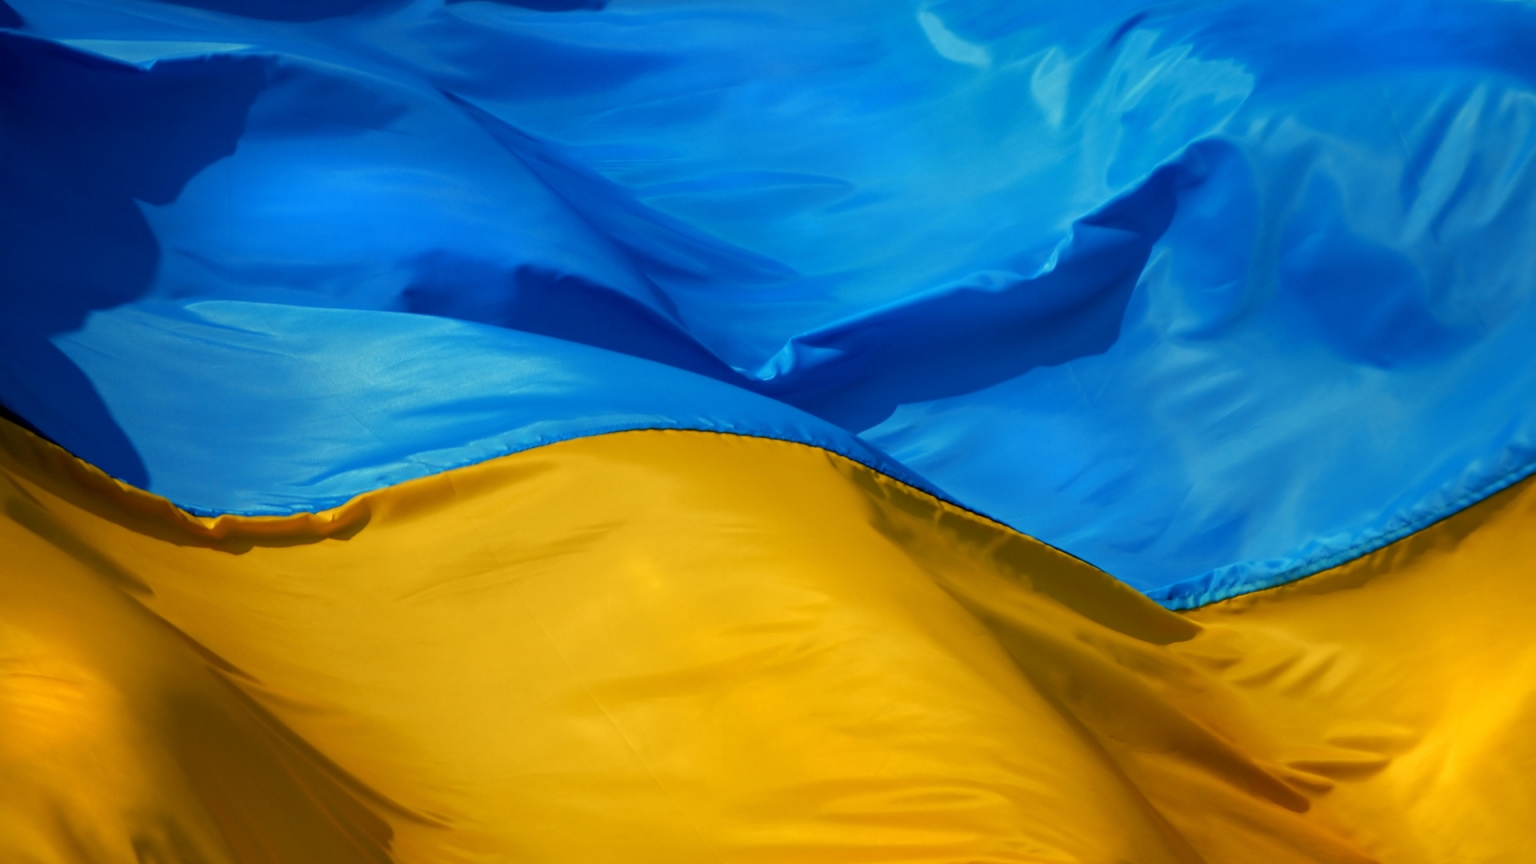 Ukraine Flag for 1536 x 864 HDTV resolution